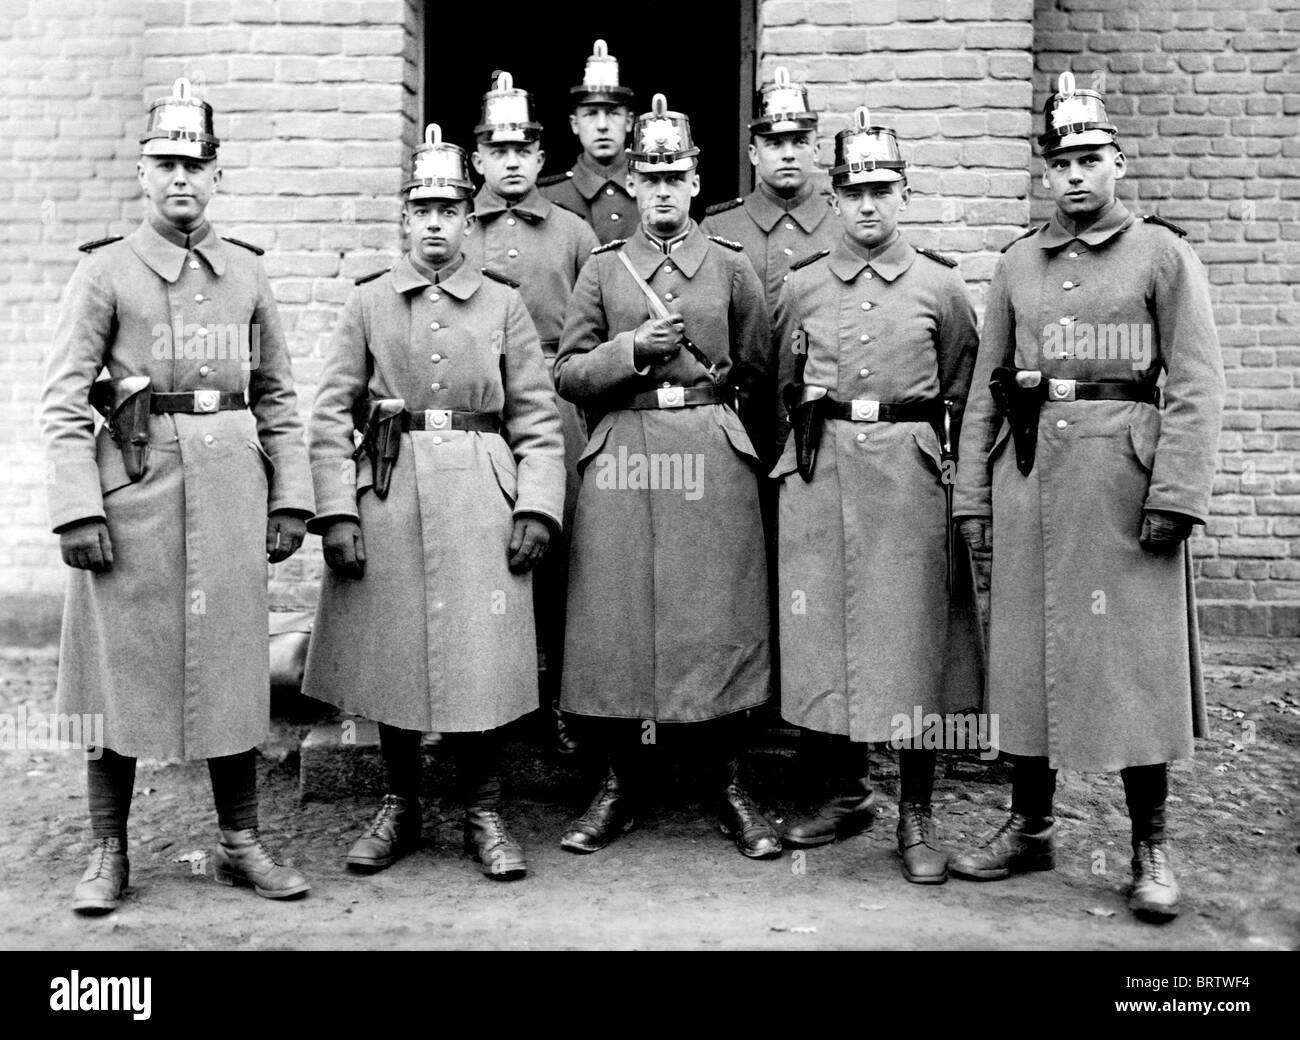 La Academia de Policía de Brandeburgo, imagen histórica, ca. 1930 Foto de stock